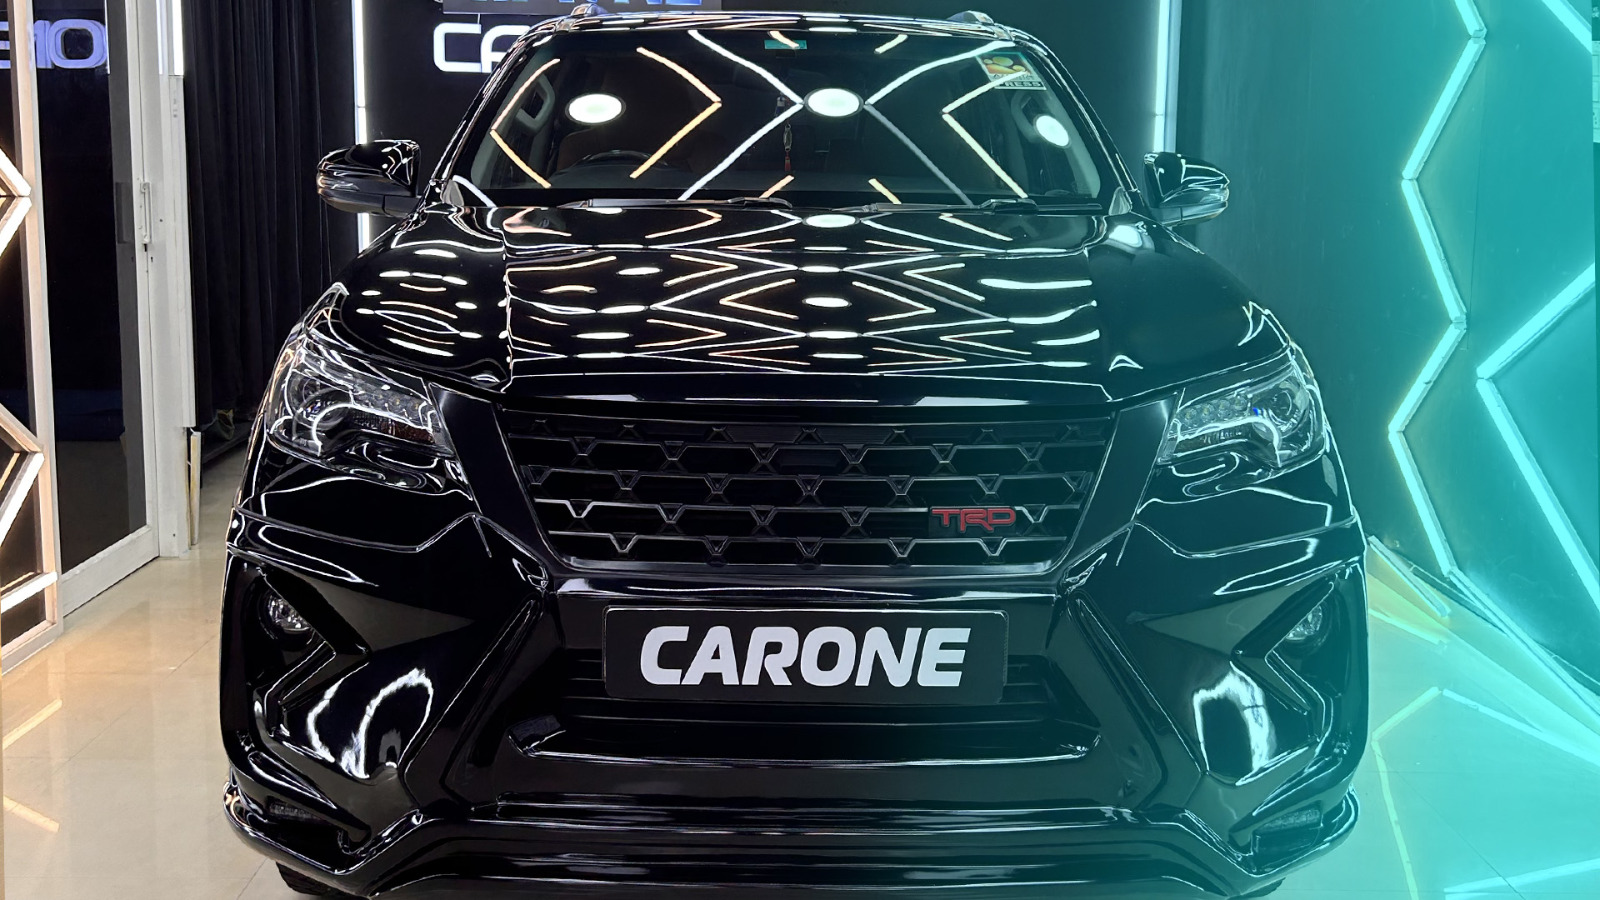 Carone Car detailing image